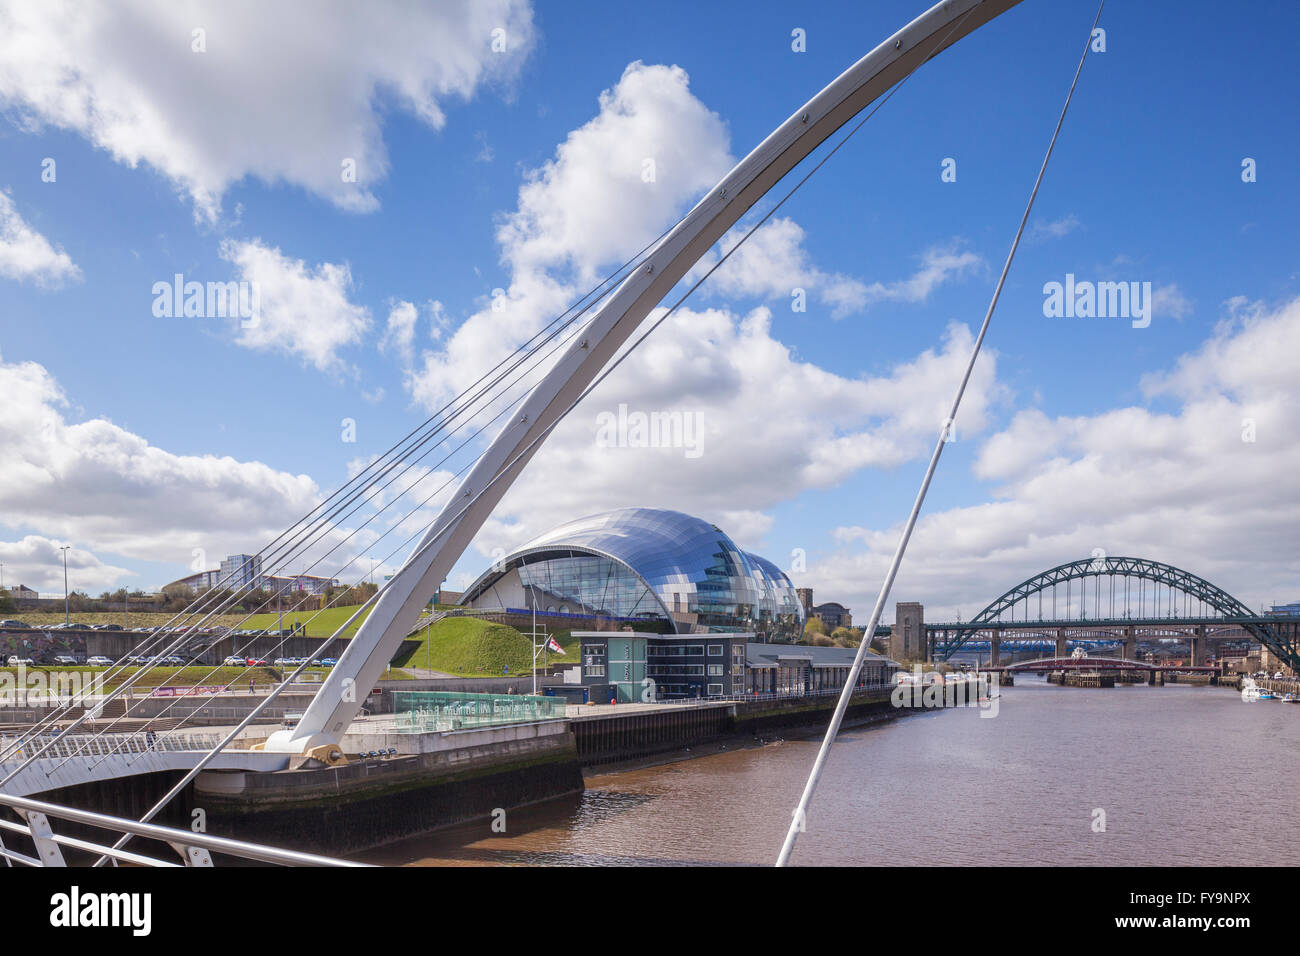 Los puentes Tyne y el Sage Gateshead, por Foster y asociados, desde el Puente del Milenio, Newcastle-upon-Tyne, Tyne y desgaste, Foto de stock